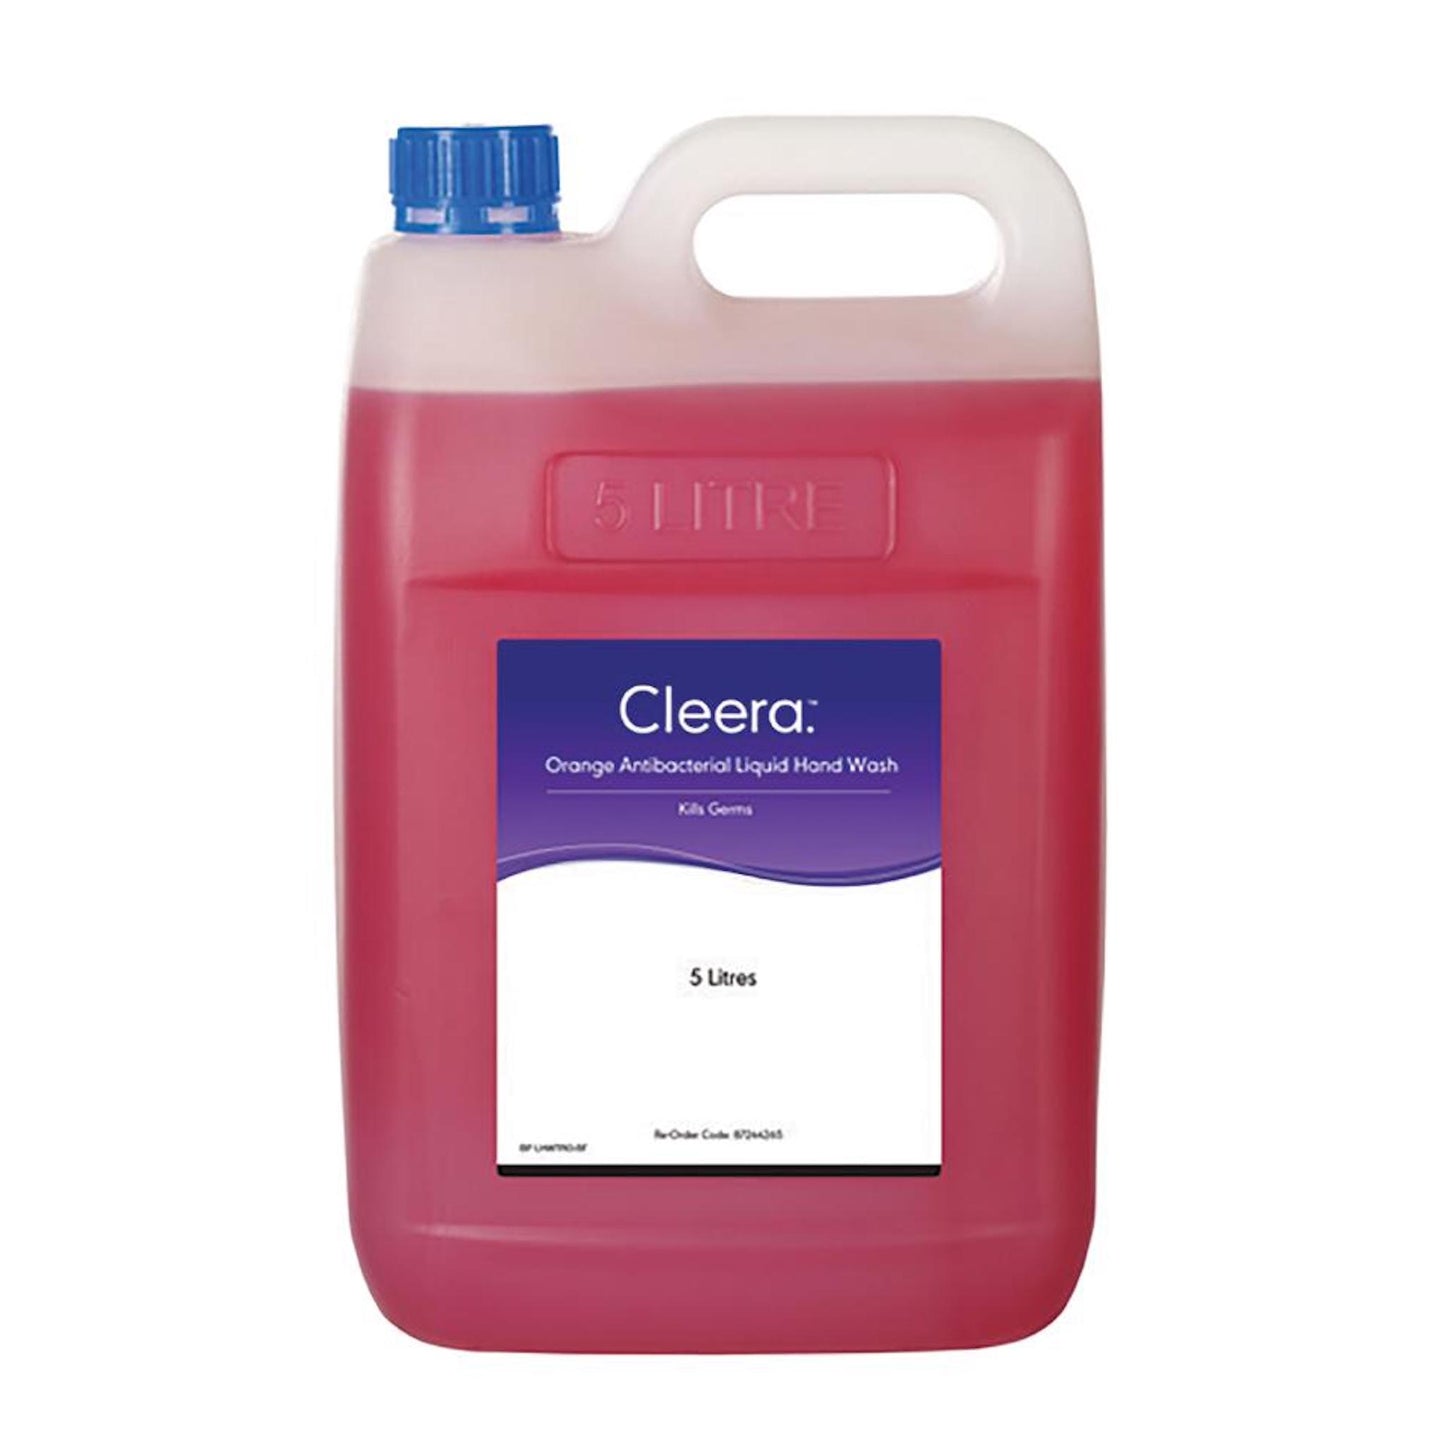 Cleera Hand Wash Antibacterial Liquid Citrus Orange 5L